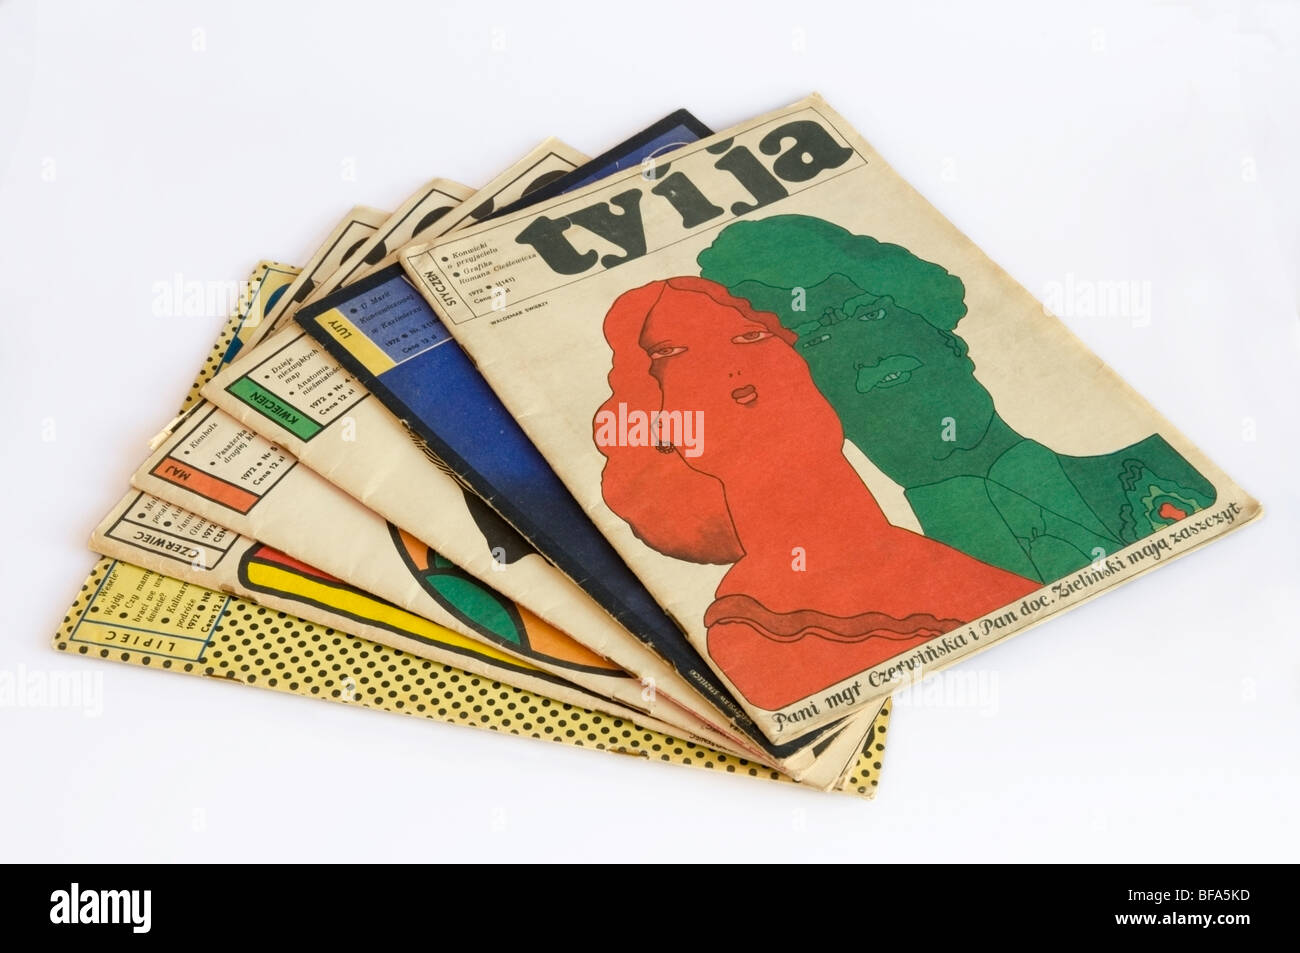 Six éditions de Ty i ja, "Vous et moi" l'illustre magazine collection polonaise de 1972, le capot avant en W. Świerzy Pologne, UNION EUROPÉENNE Banque D'Images